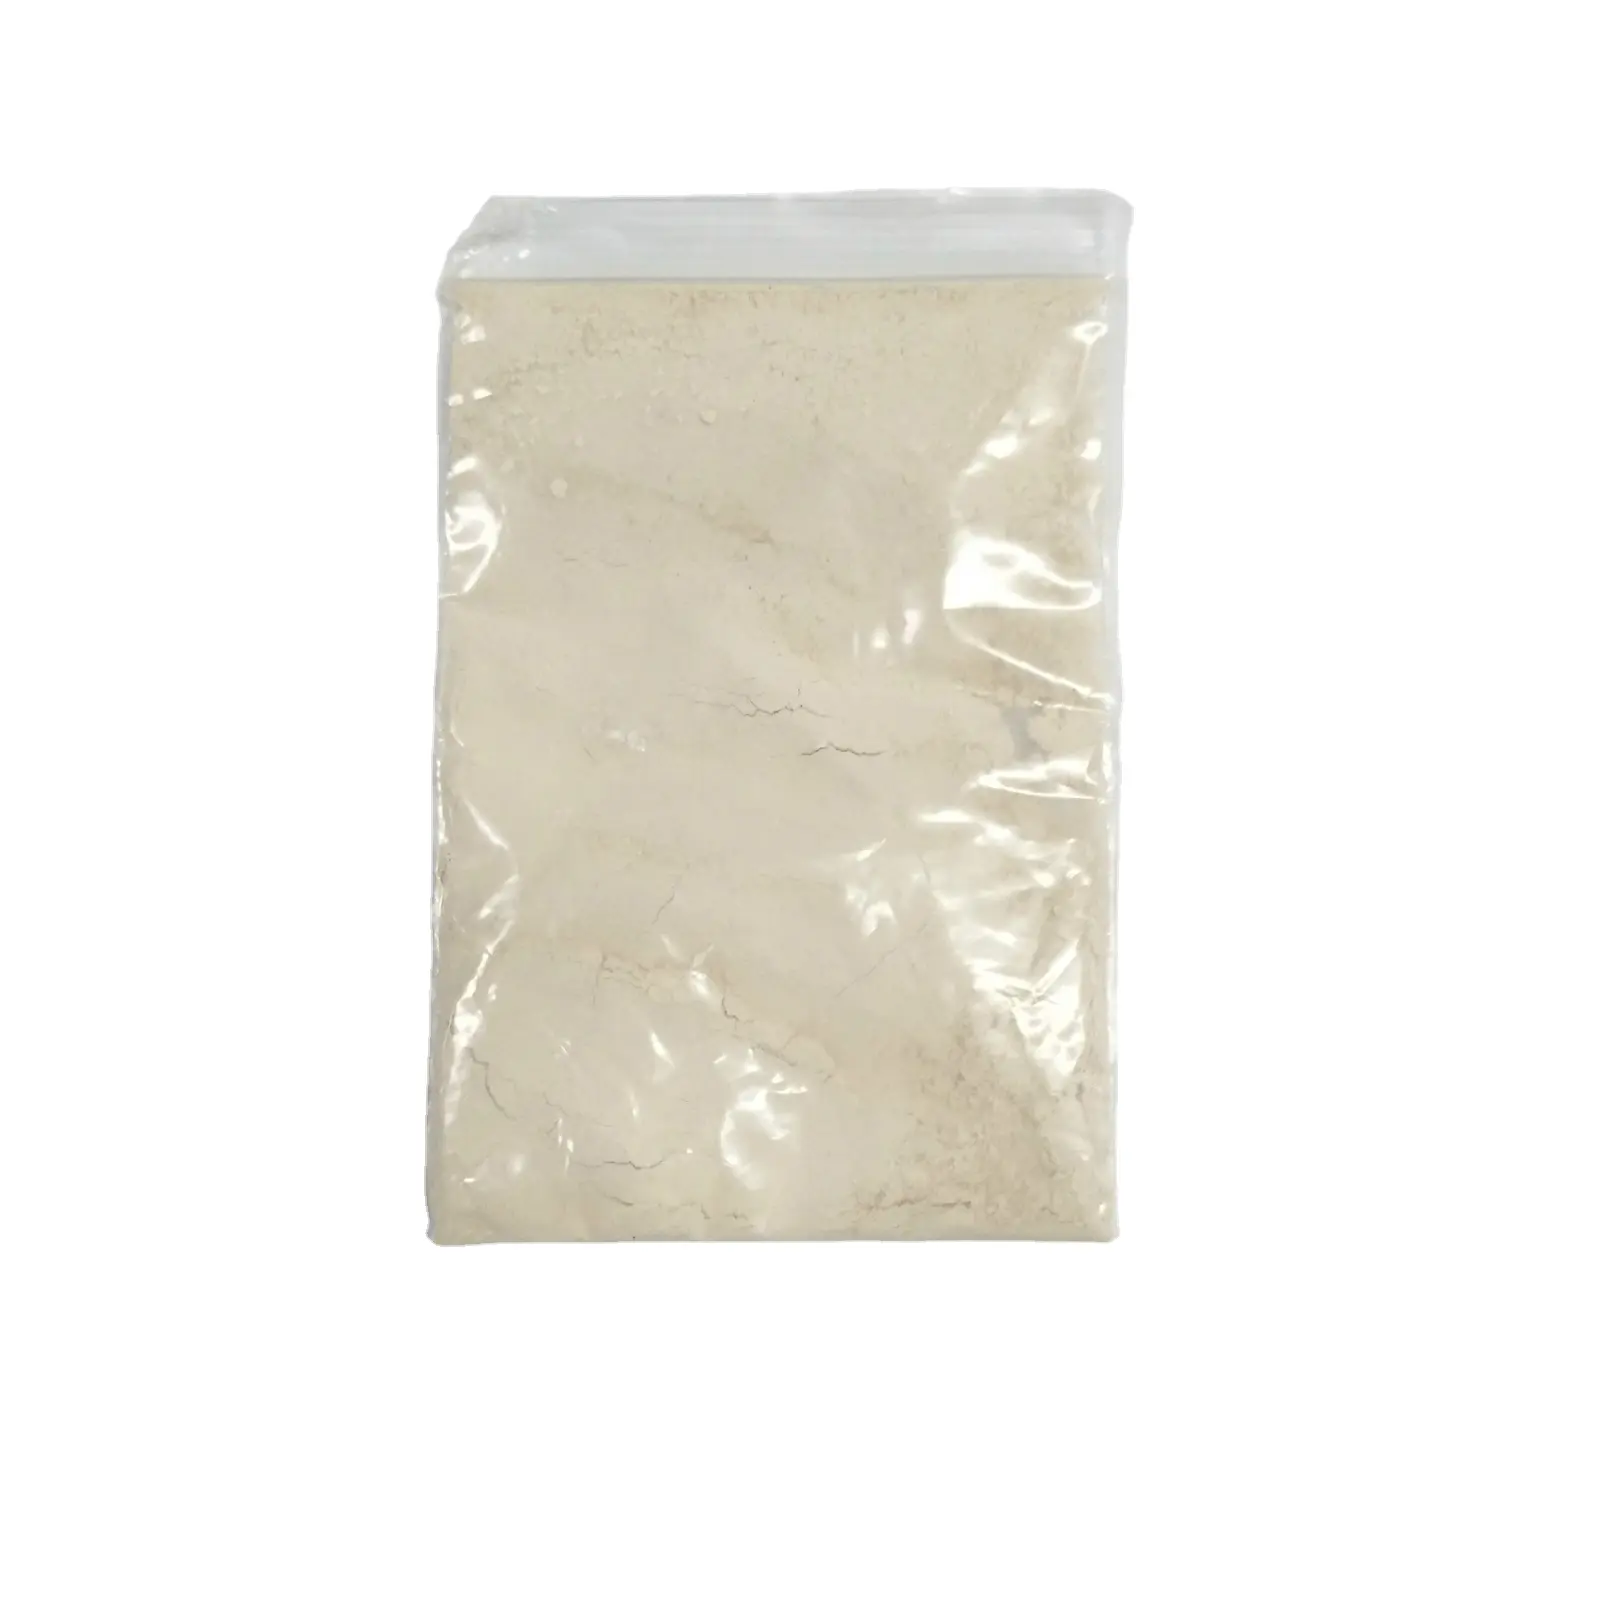 Натуральный пищевой консервант от производителя Nisin E234 используется в молочных продуктах